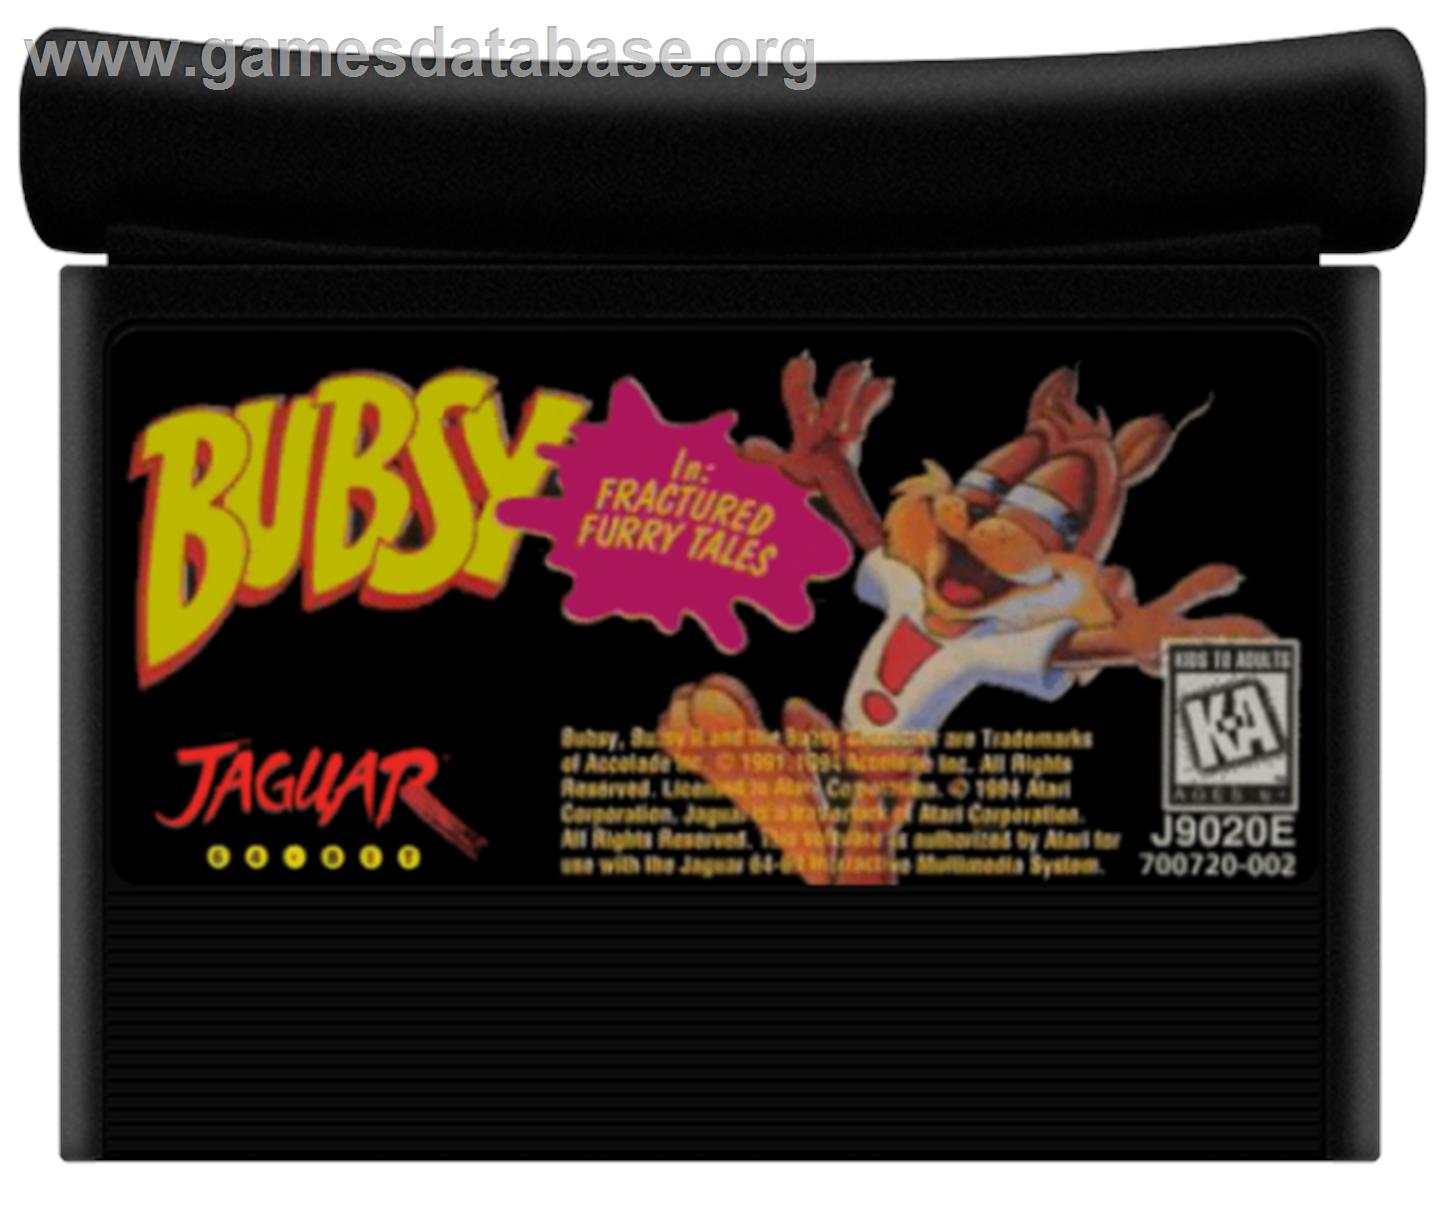 Bubsy in Fractured Furry Tales - Atari Jaguar - Artwork - Cartridge